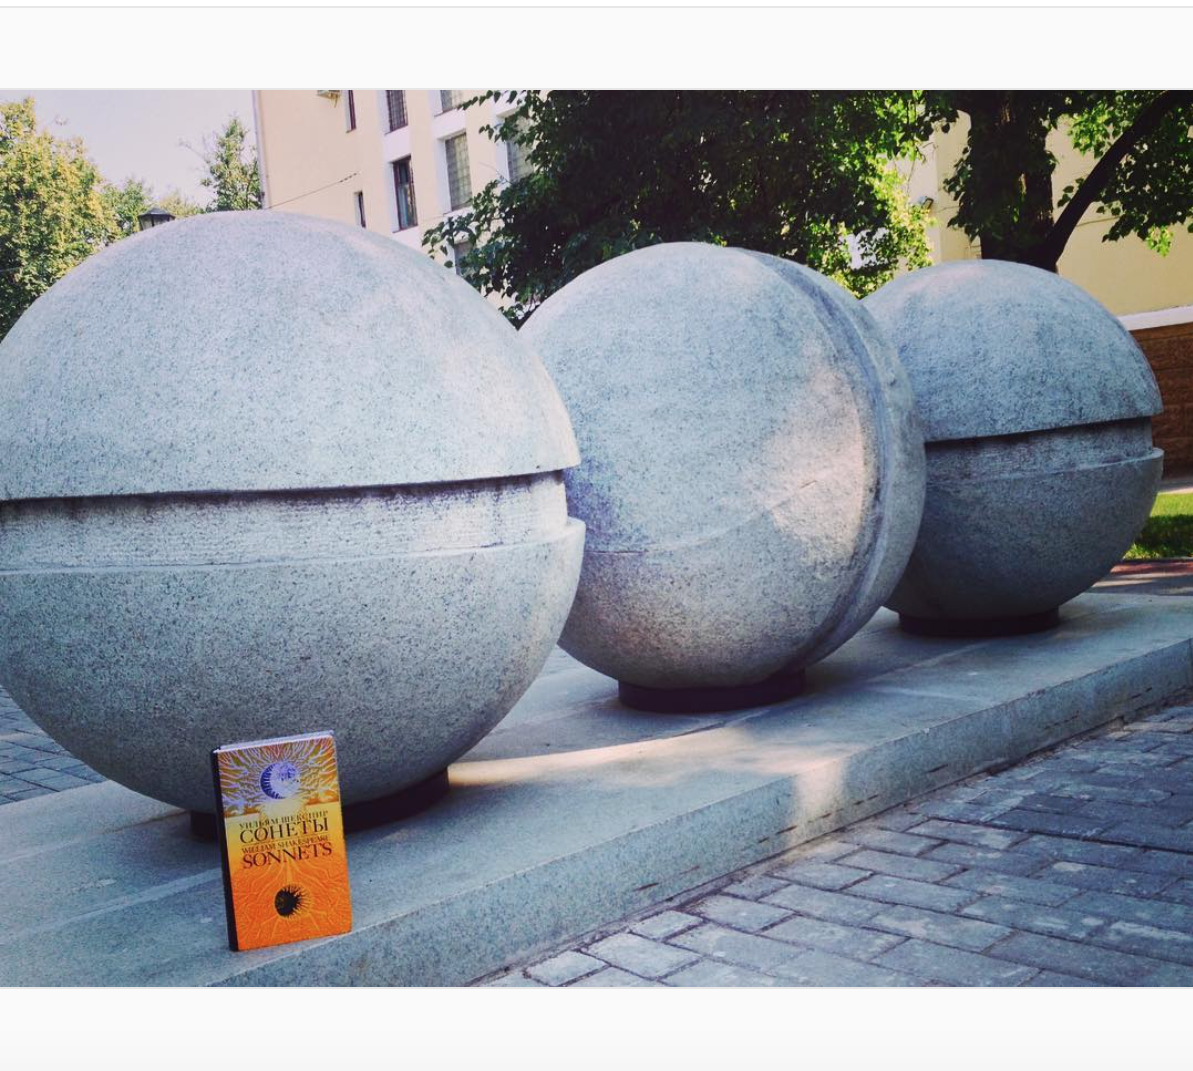 Сборник сонетов Шекспира в 2016 году объехал всю страну, а на этой фотографии он на фоне уфимских шариков.